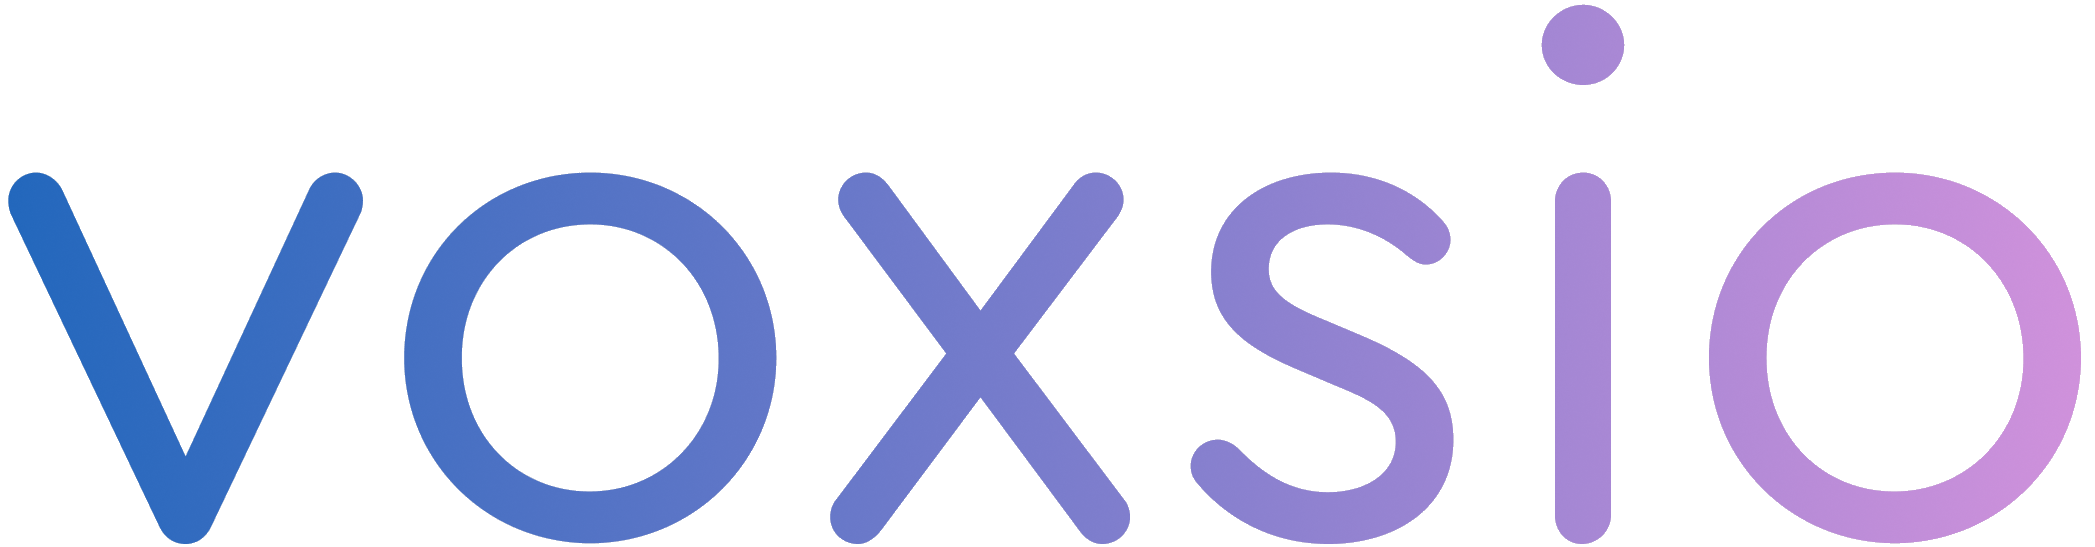 The Voxsio wordmark